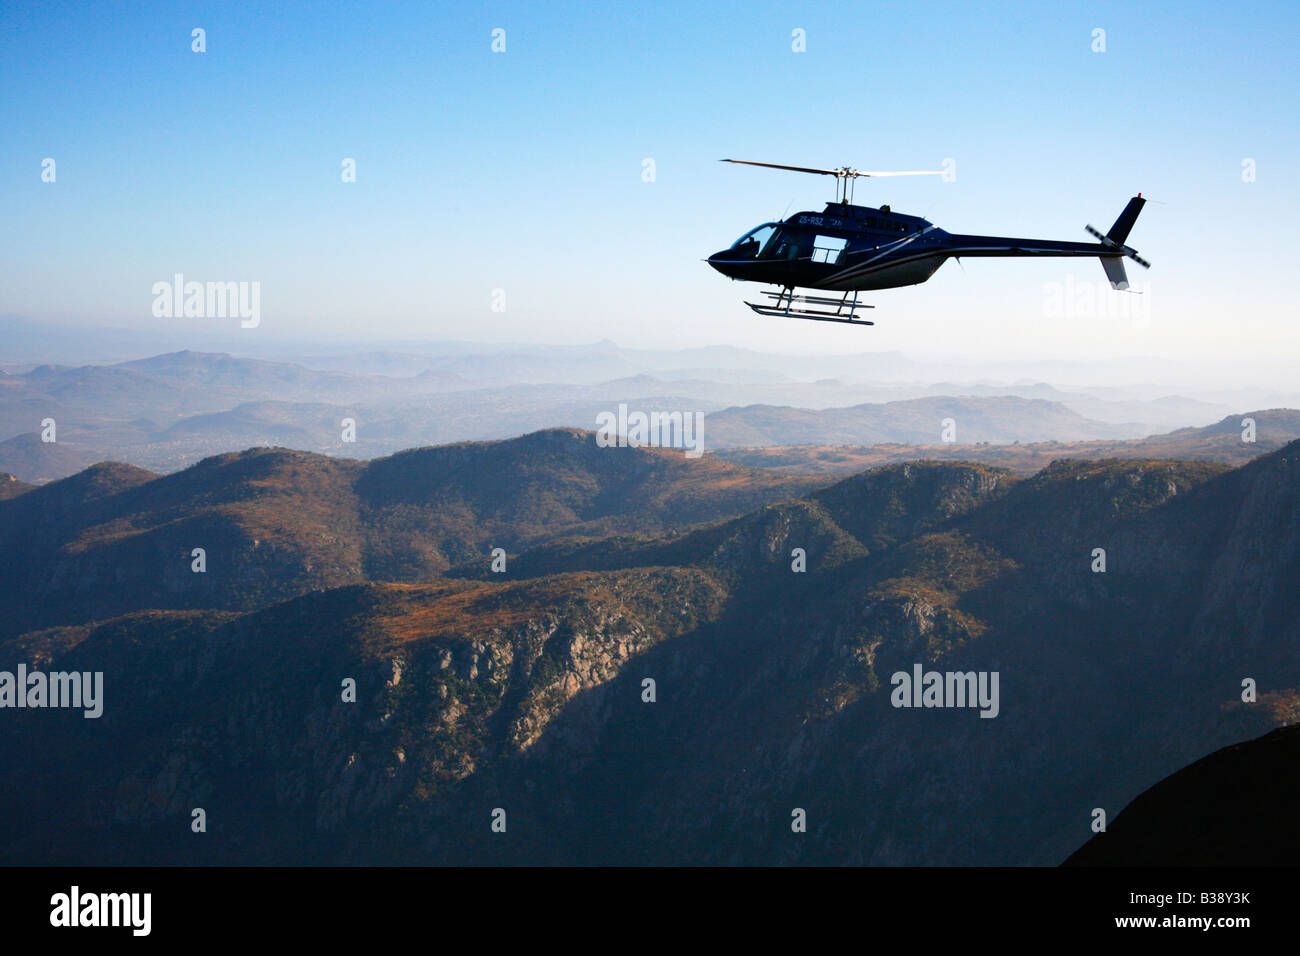 Vista aerea di un elicottero in una pittoresca zona montagnosa Foto Stock